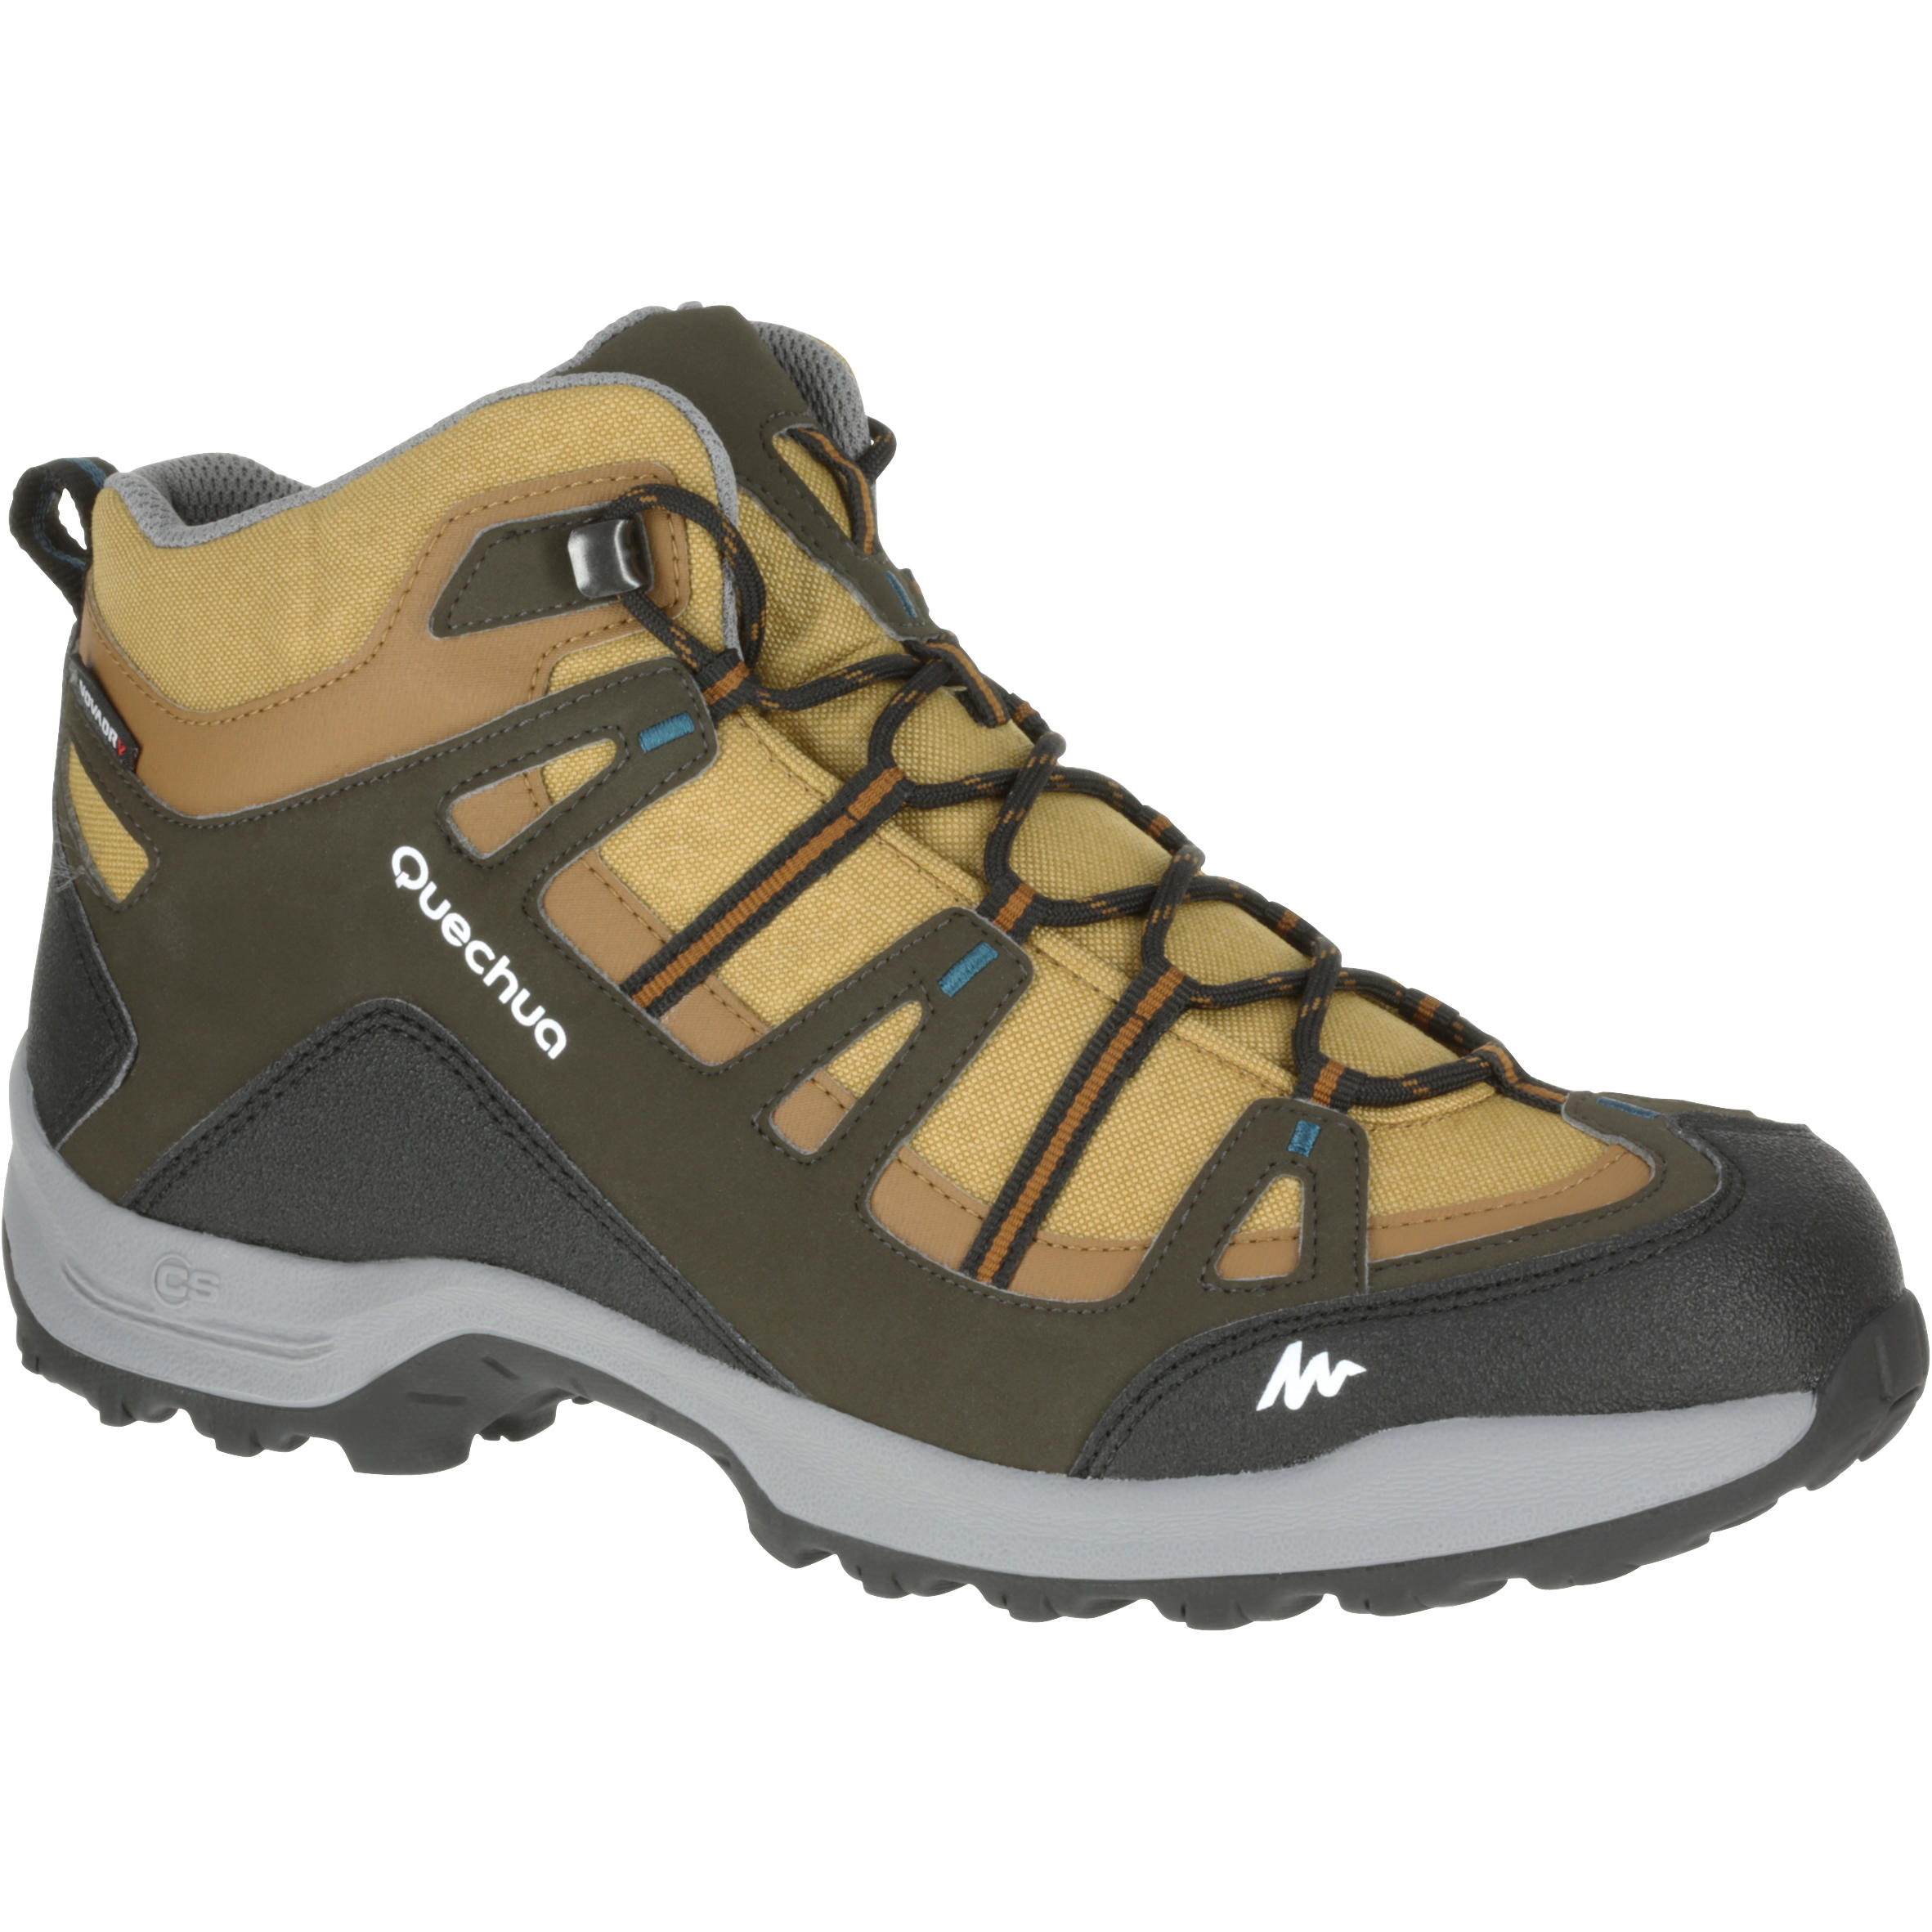 QUECHUA Quechua Arpenaz 100 Mid Men's Waterproof Hiking Boots